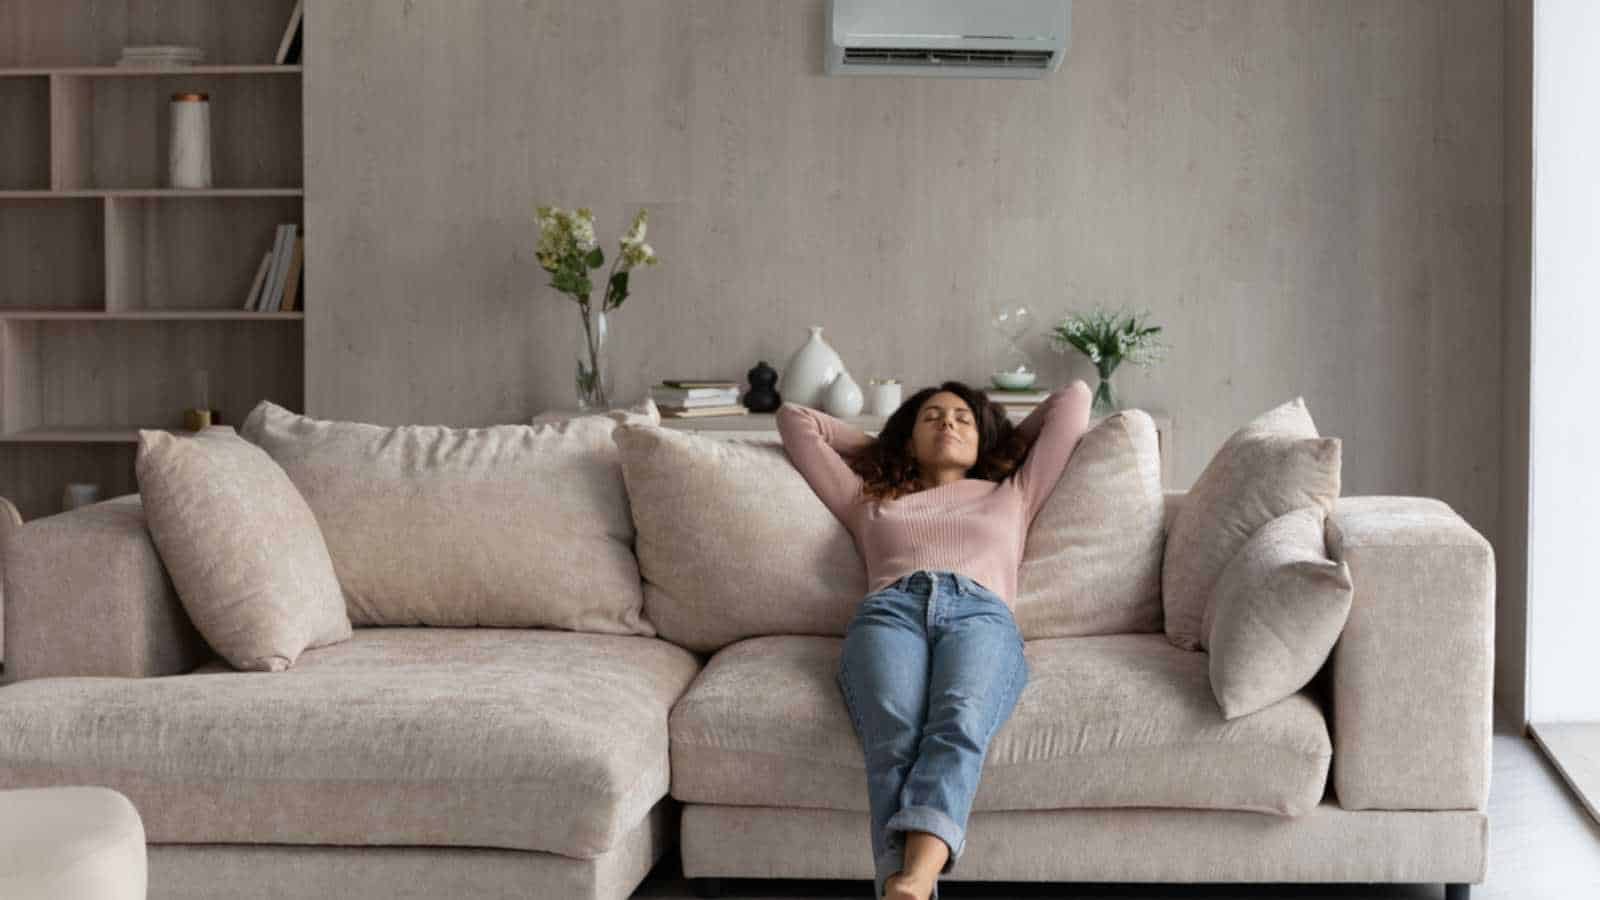 Woman lying in furniture